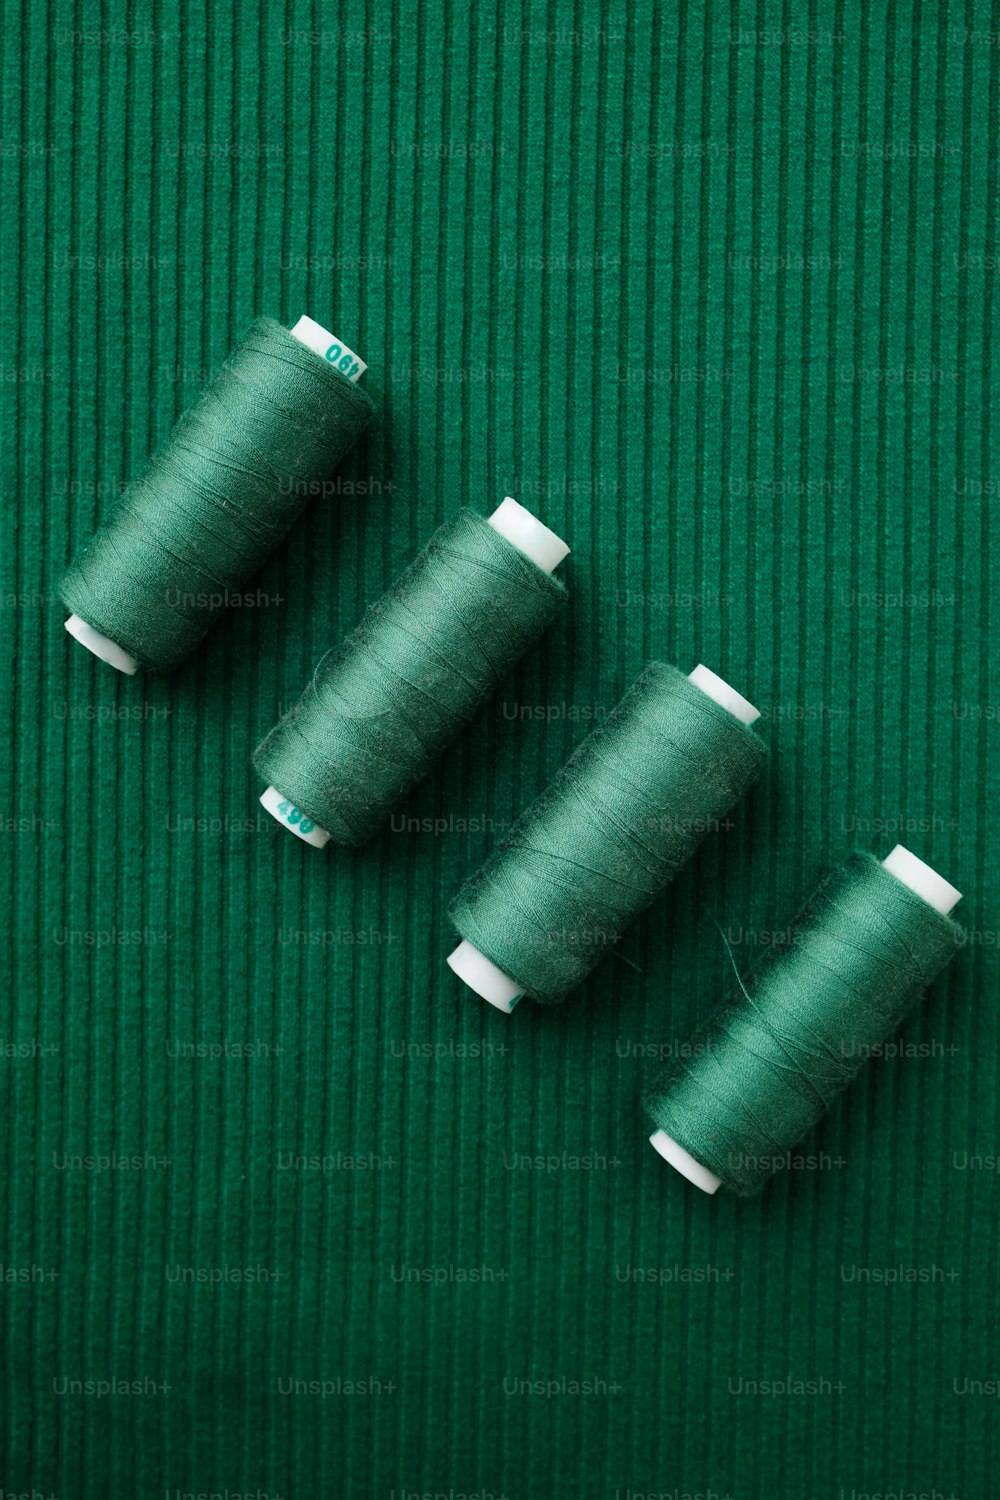 Trois bobines de fil assises sur une surface verte